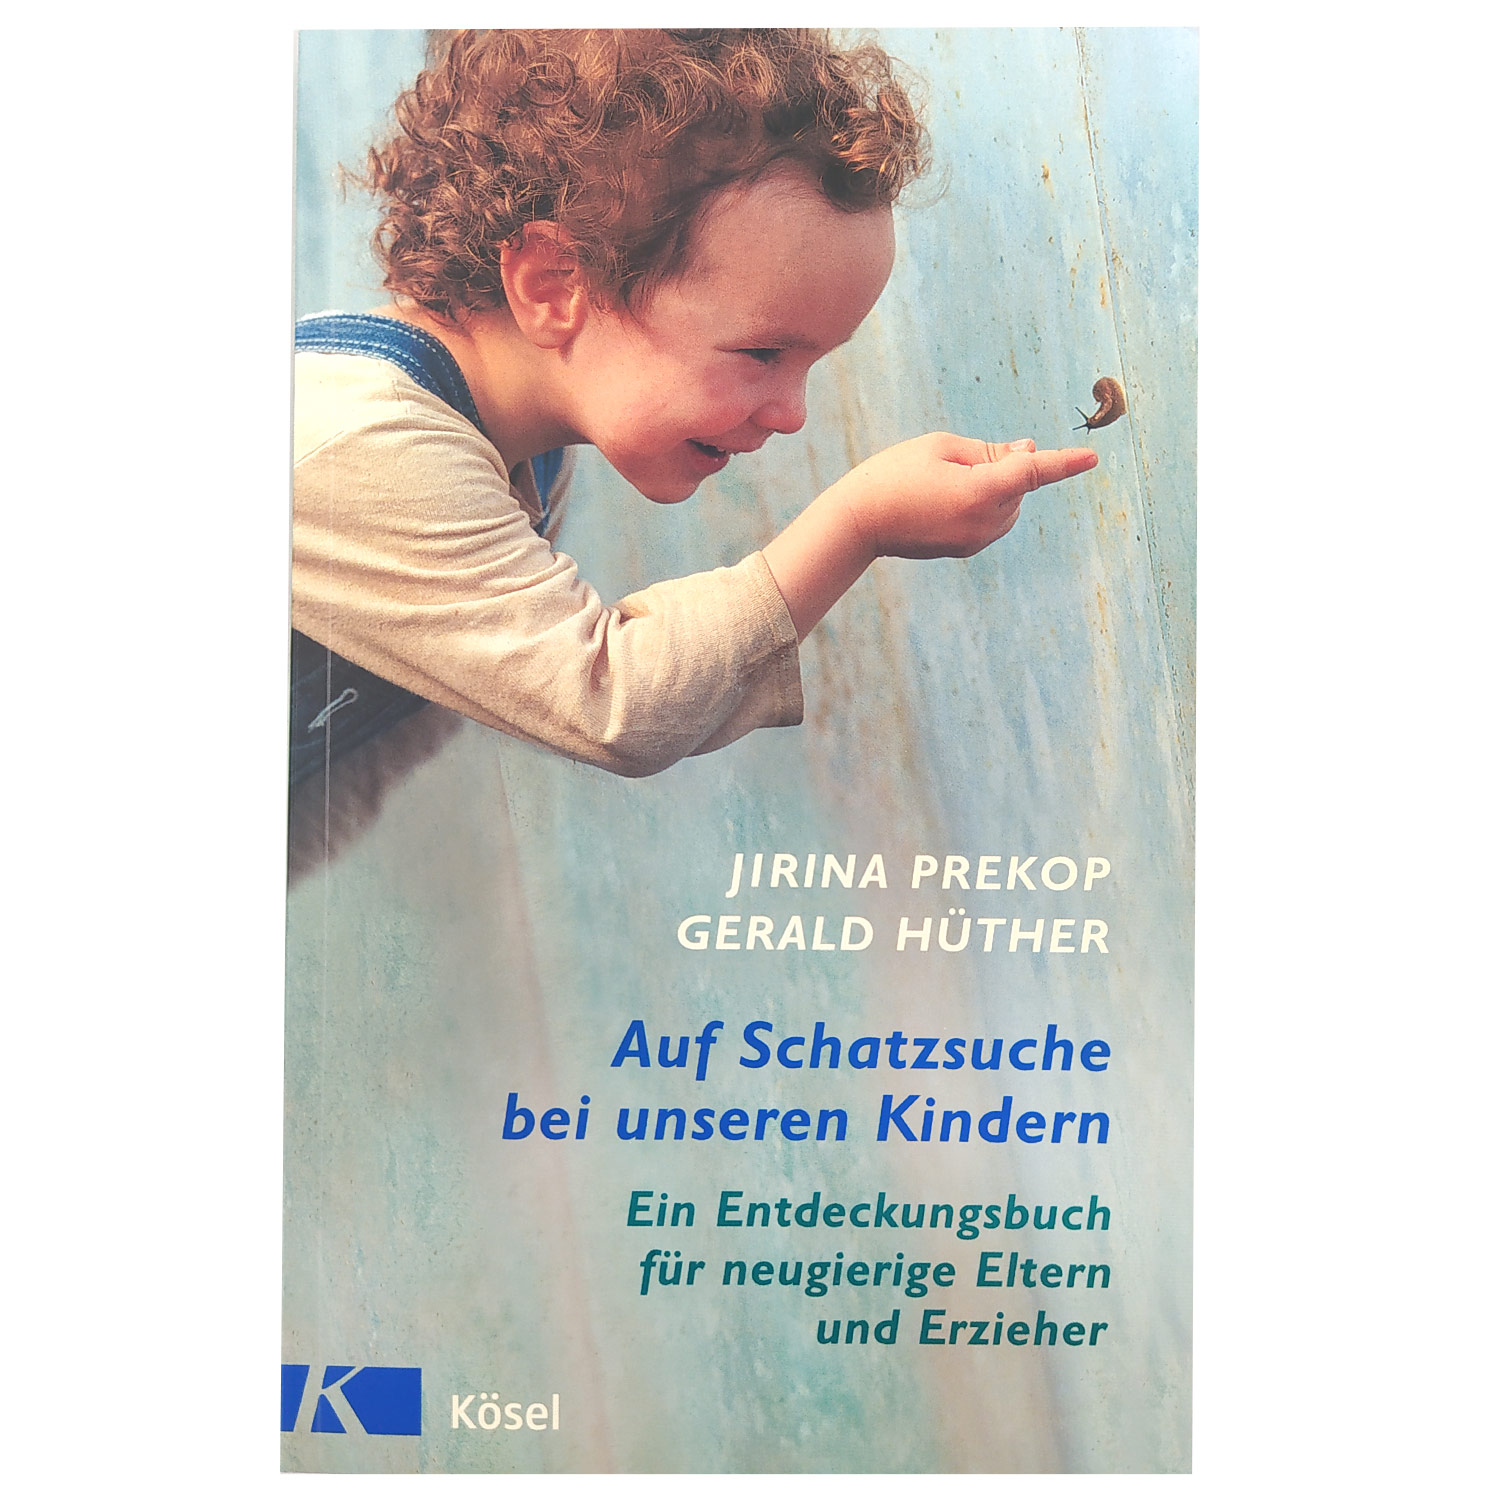 Auf Schatzsuche bei unseren Kindern (in German)